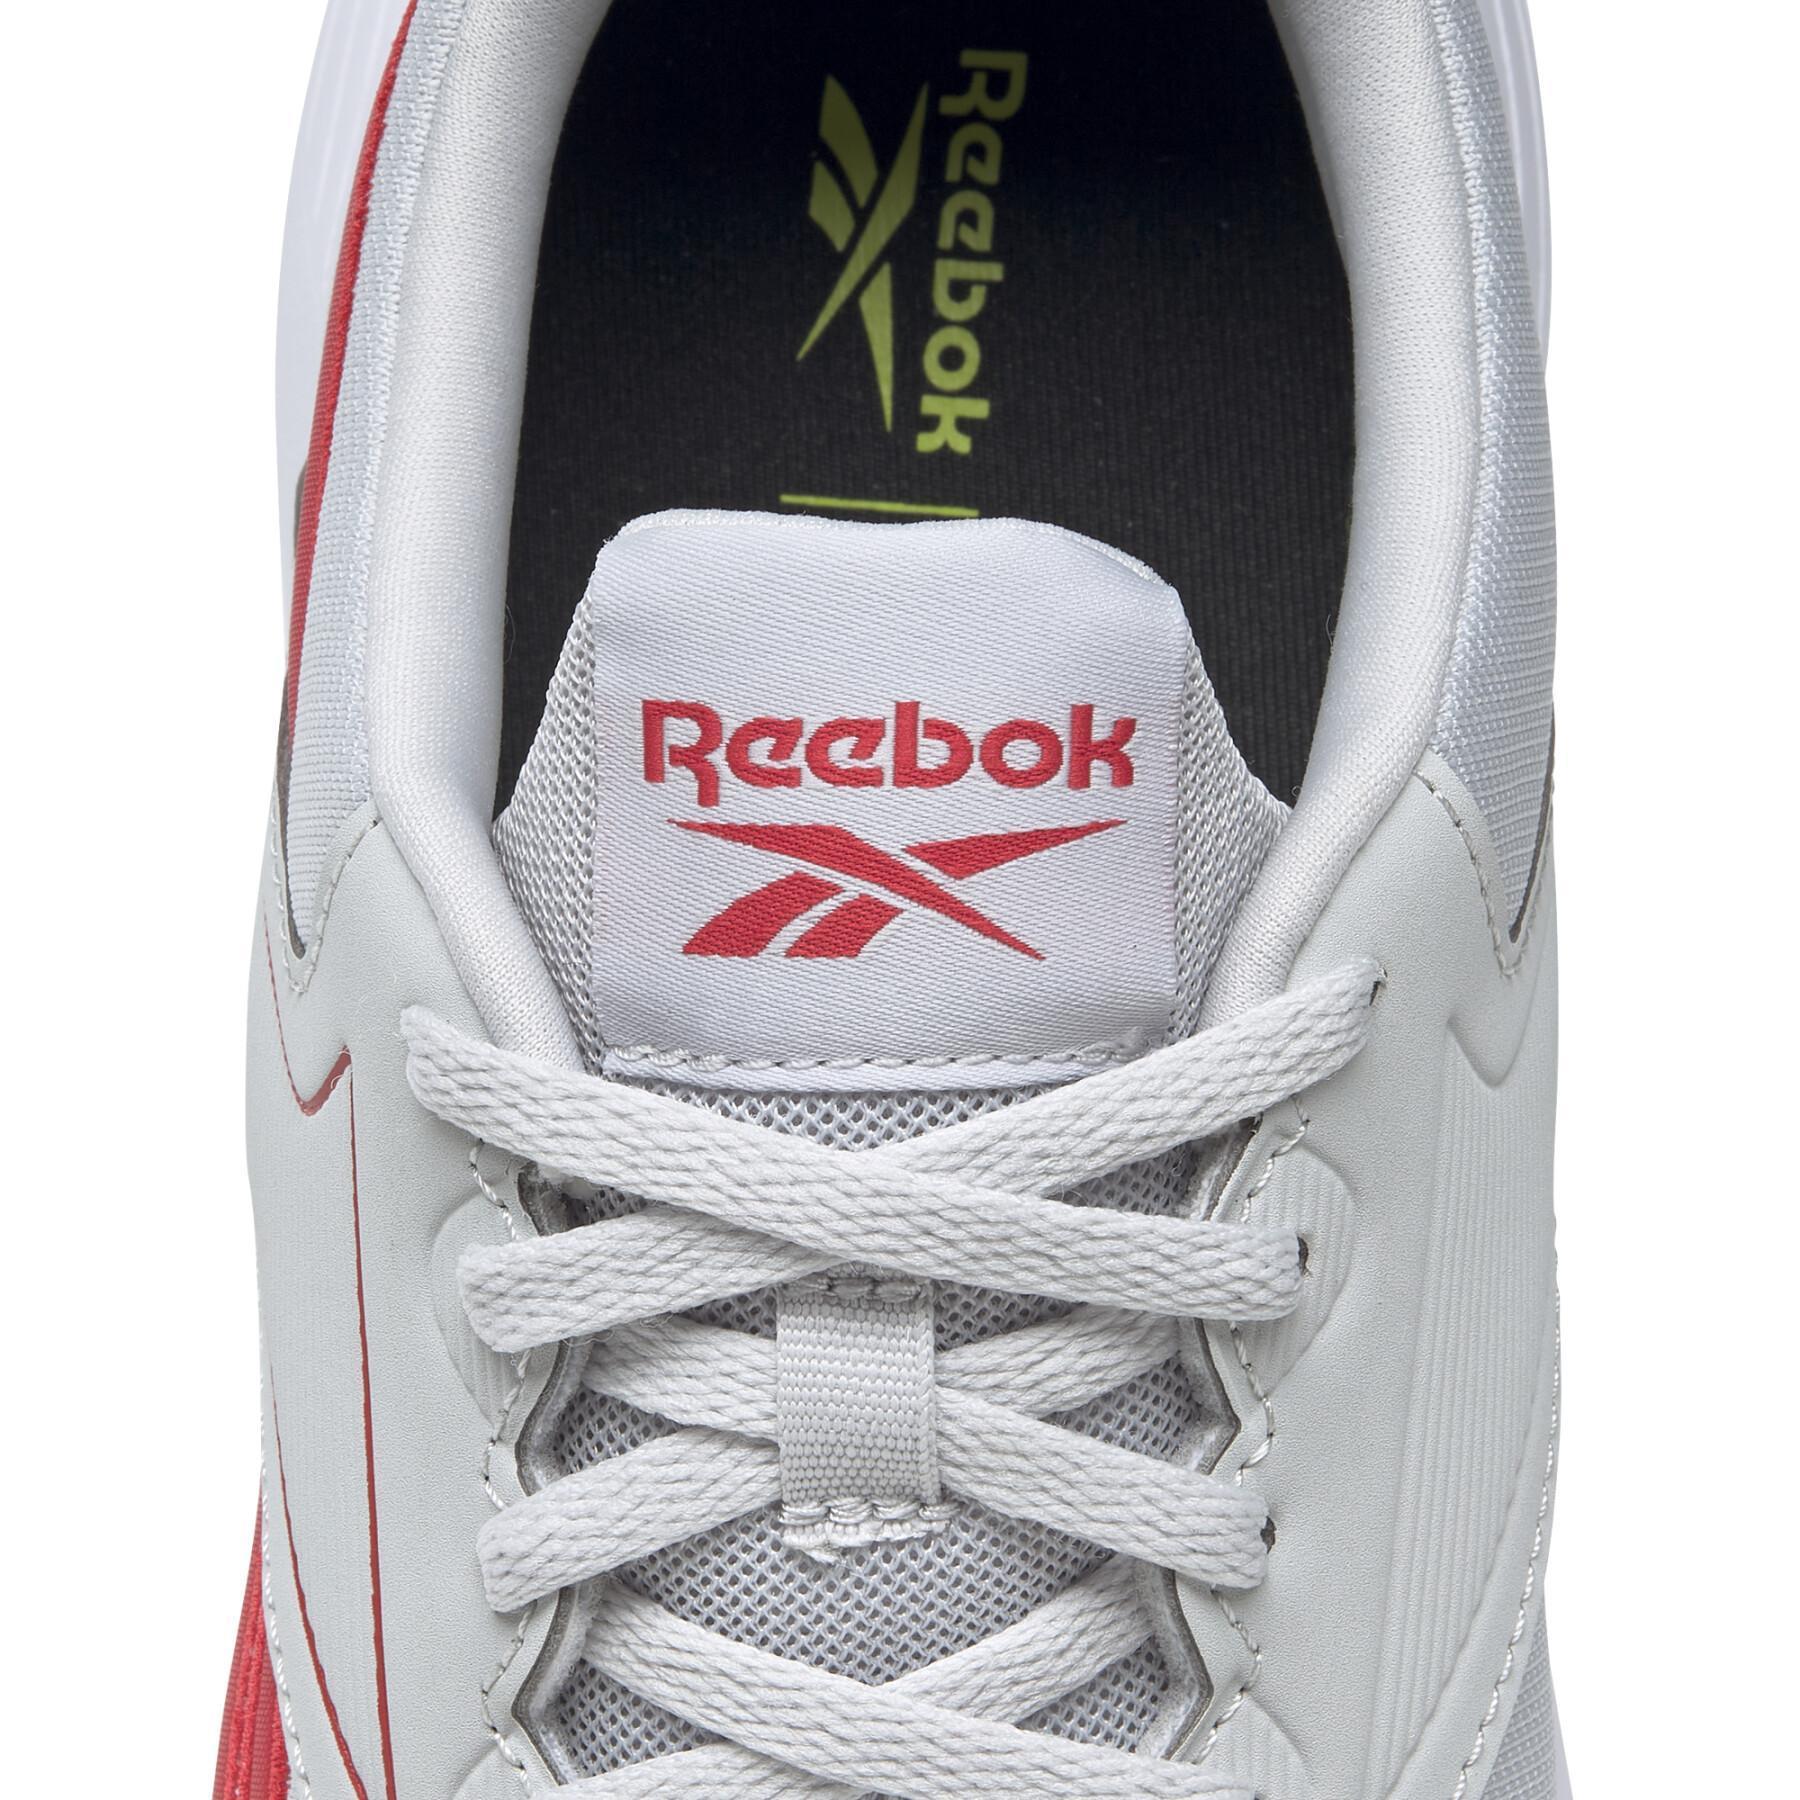 Schuhe Reebok Lite 3